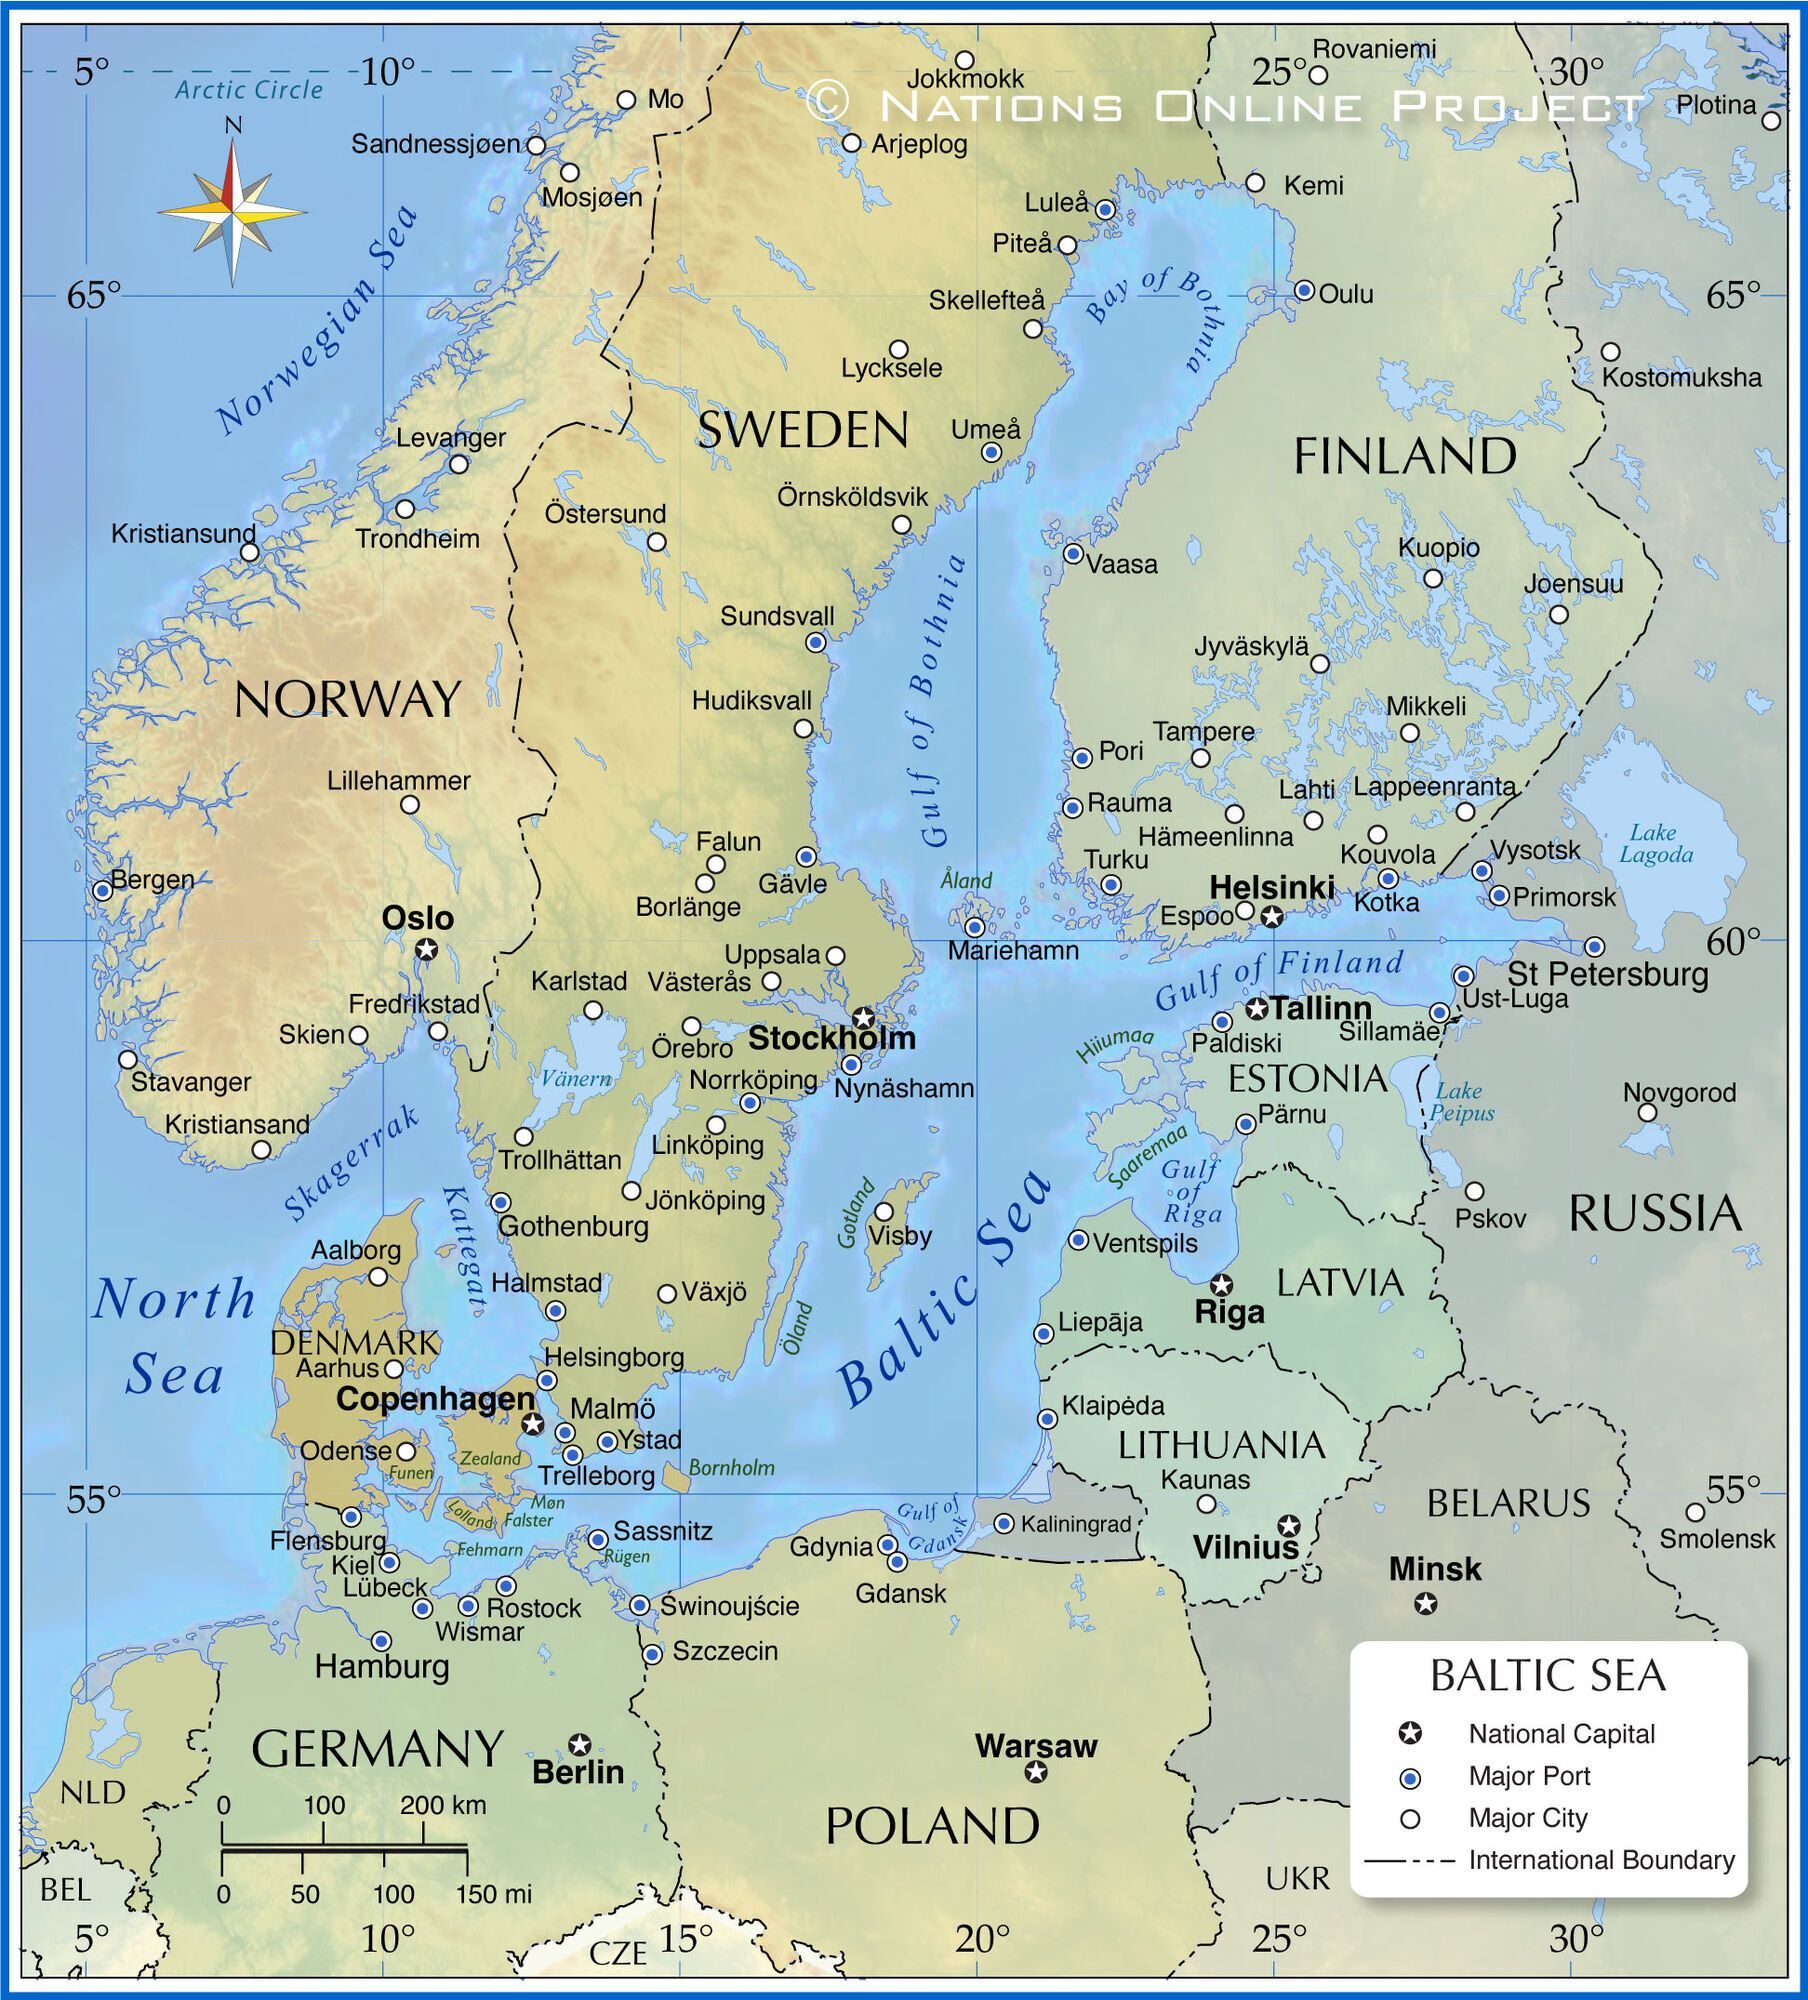 Балтийская Тузла: Россия пытается захватить часть моря рядом с Литвой и Финляндией, чтобы посмотреть на реакцию НАТО